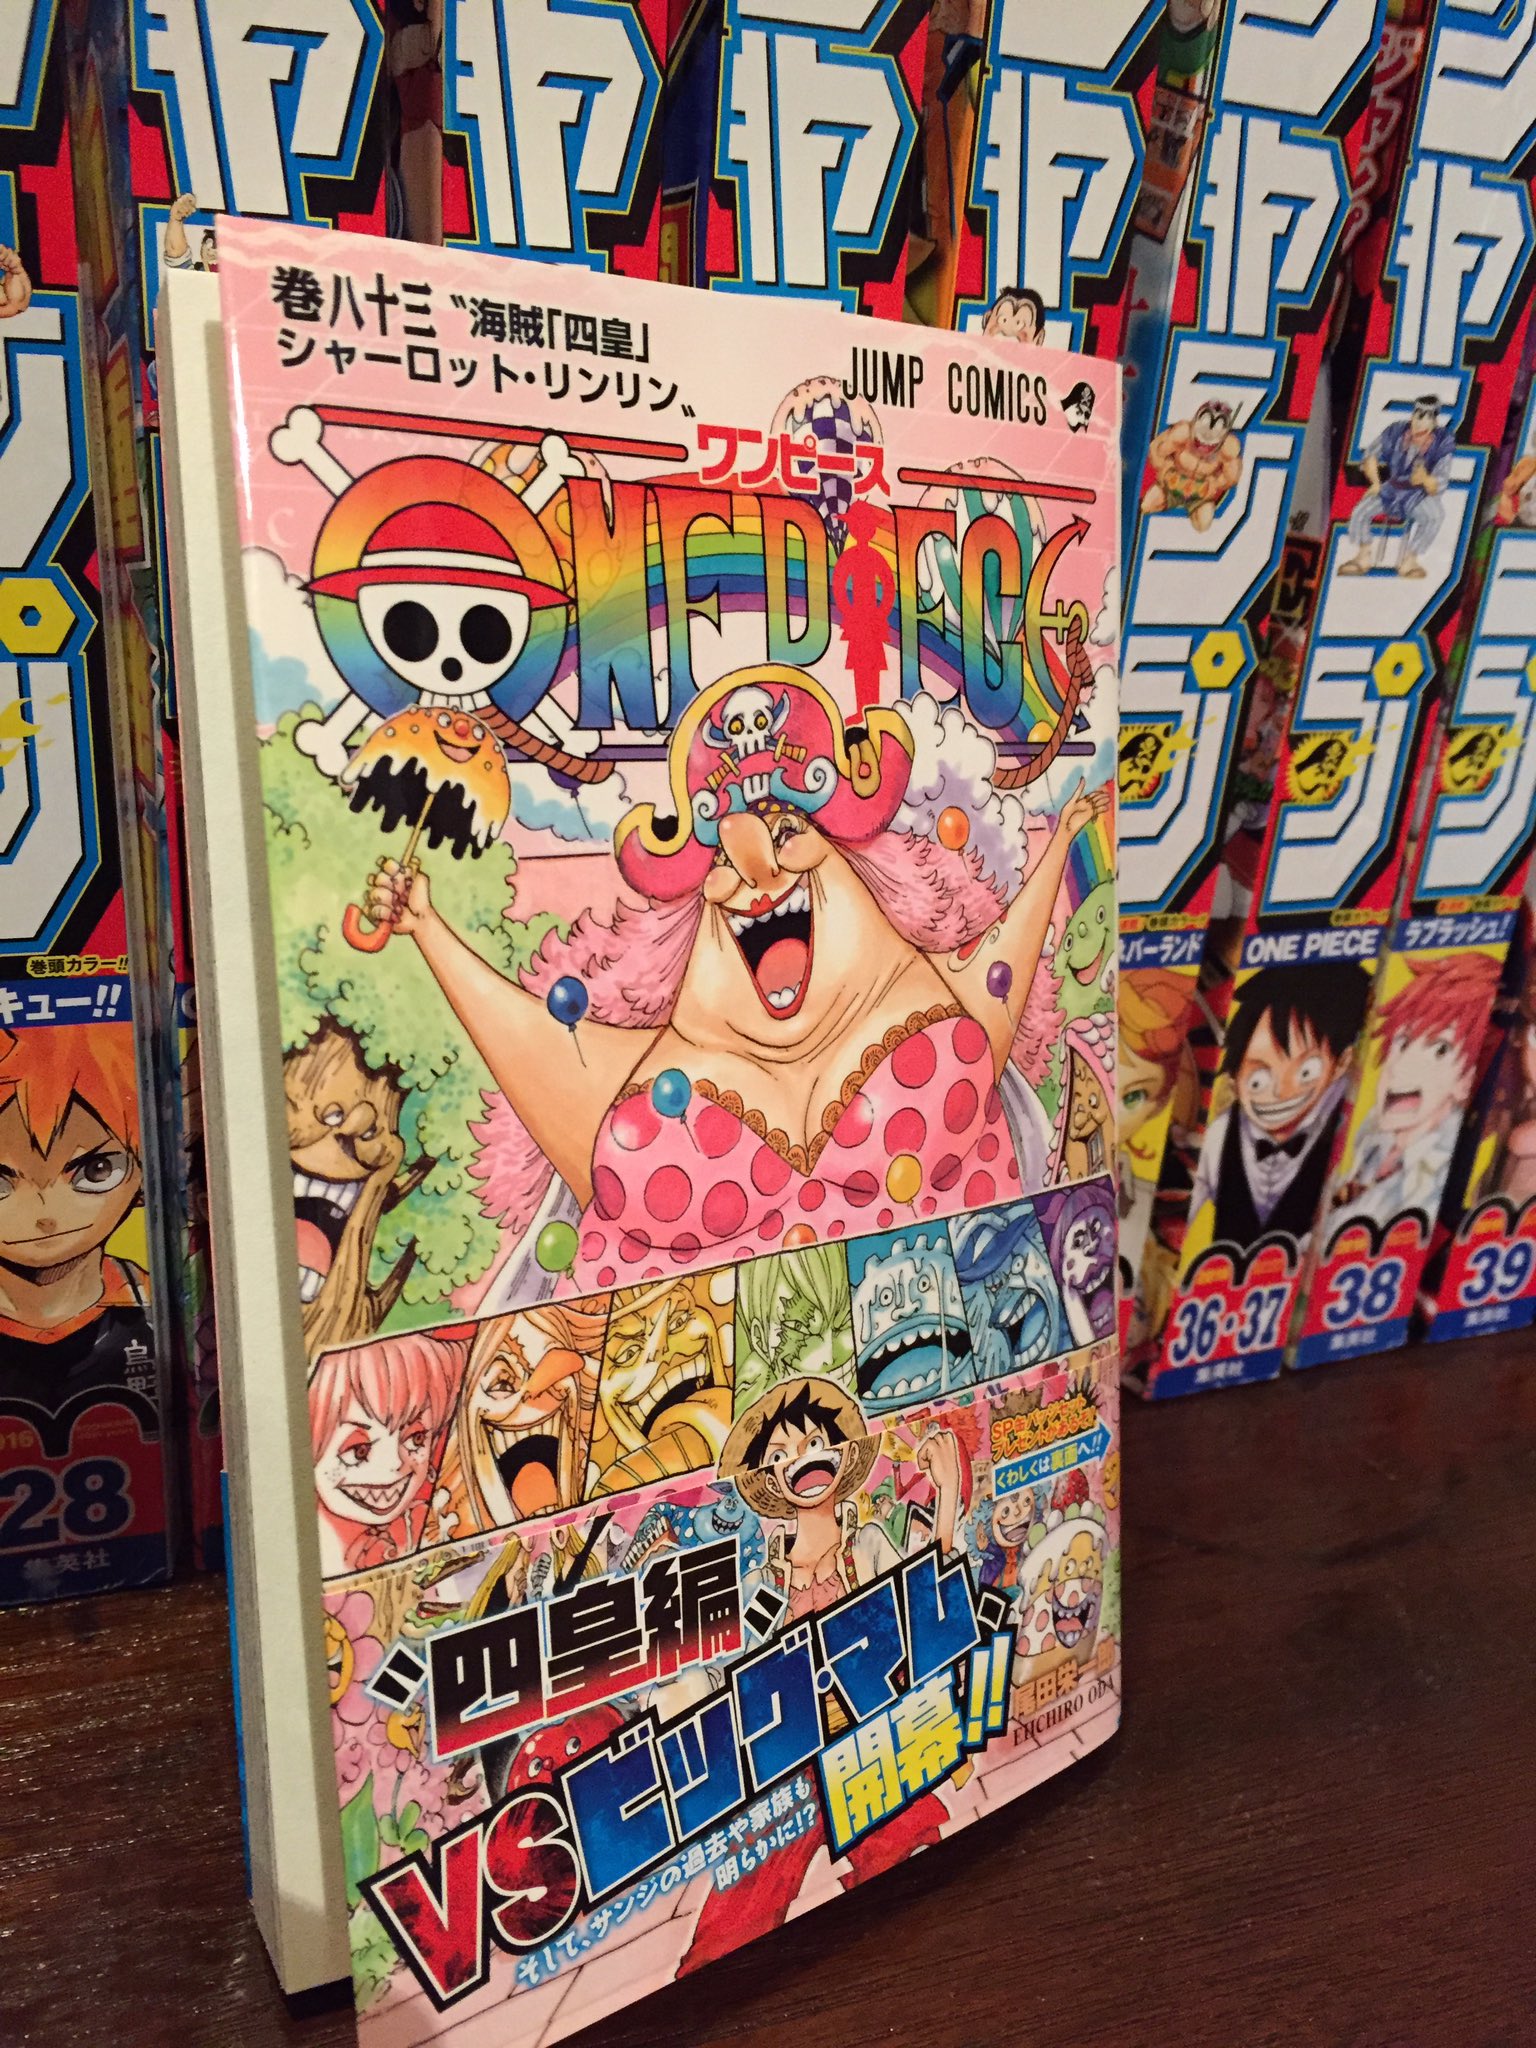 One Pieceが大好きな神木 スーパーカミキカンデ 私事恐縮 巻のsbsに採用して頂きました 尾田さんからのカンペキというお言葉身に染みてます幸せです 文化が脈々と受け継がれる そんなことがこっそりと でもしっかりと背景で描かれる